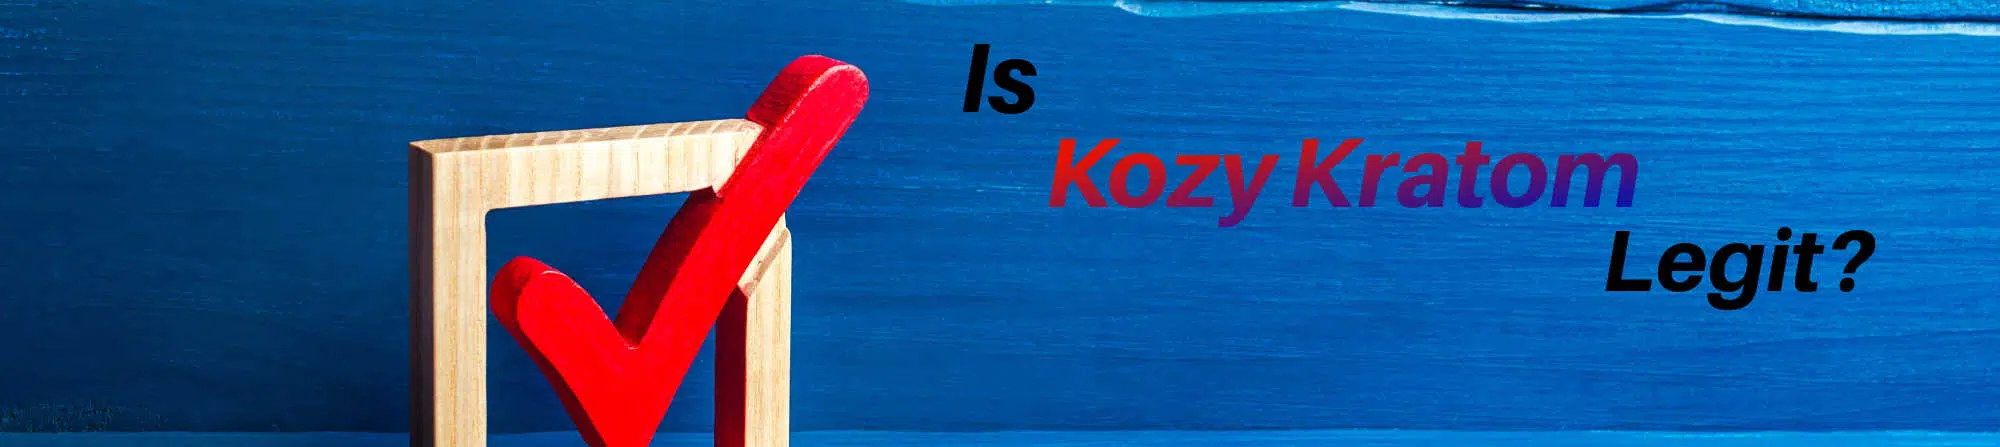 image of is kozy kratom legit